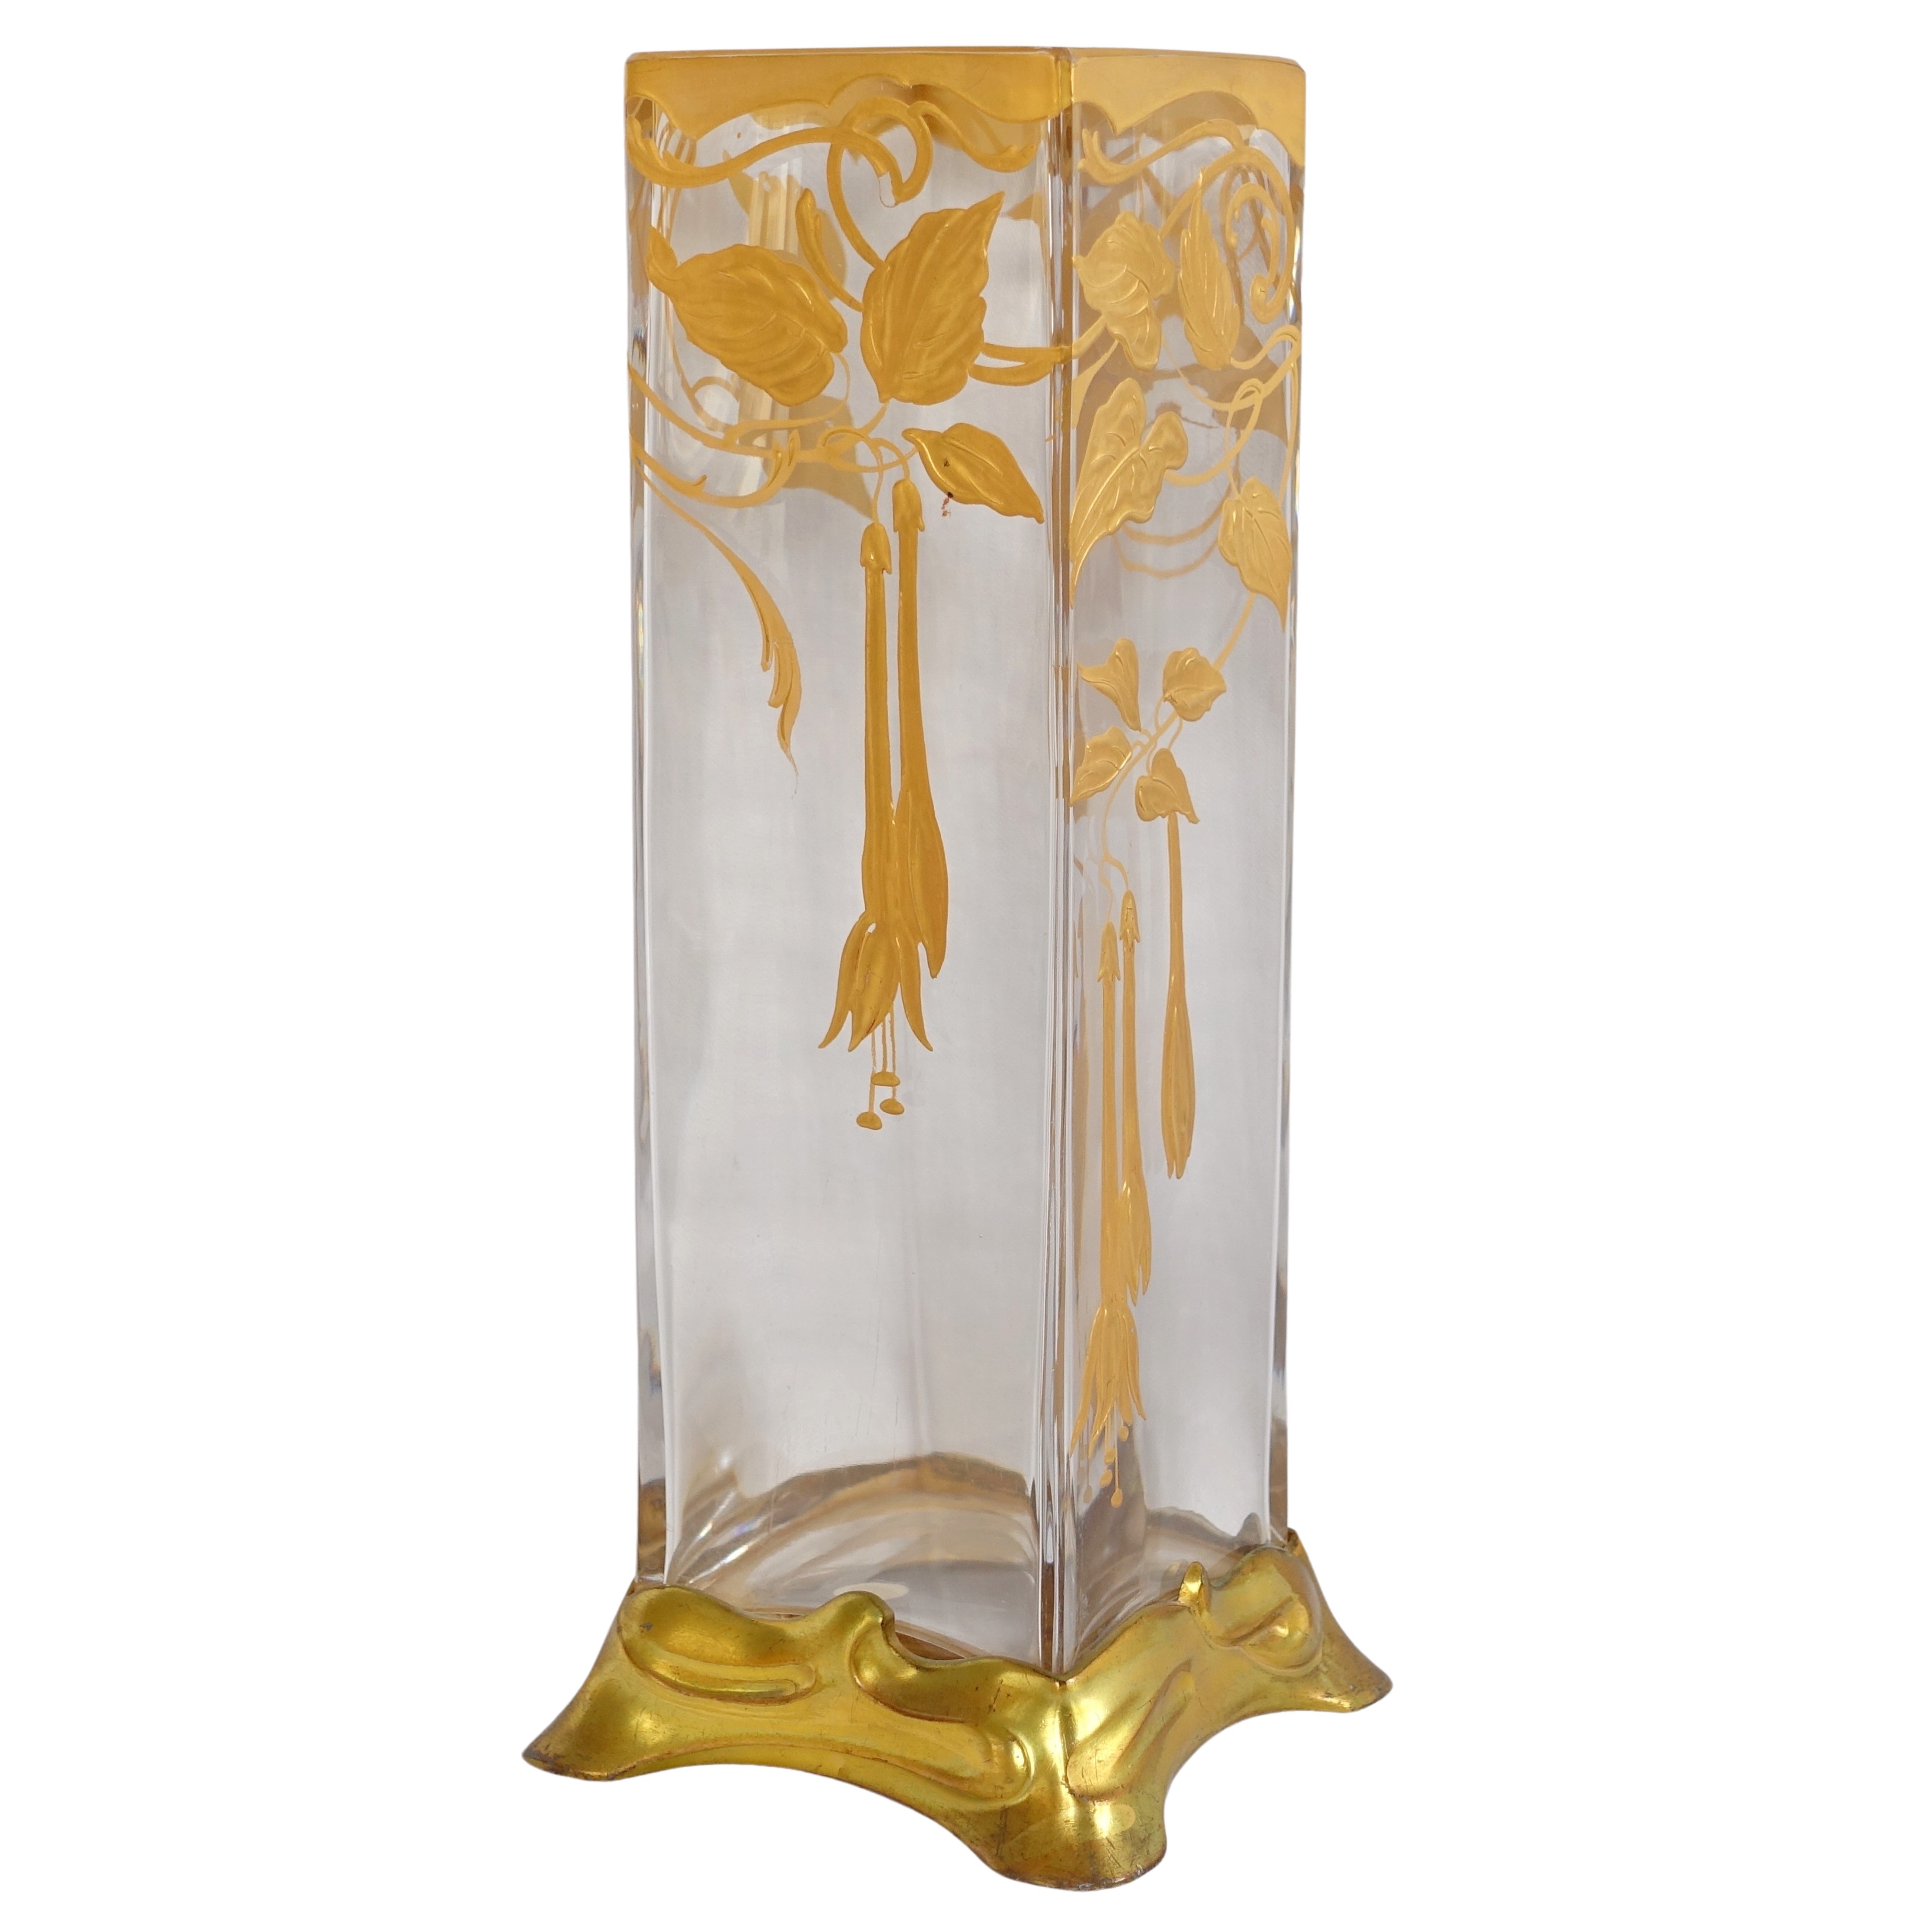 Vase en cristal de Baccarat rehaussé à l'or fin, époque Art Nouveau - époque 1900 - étiquette